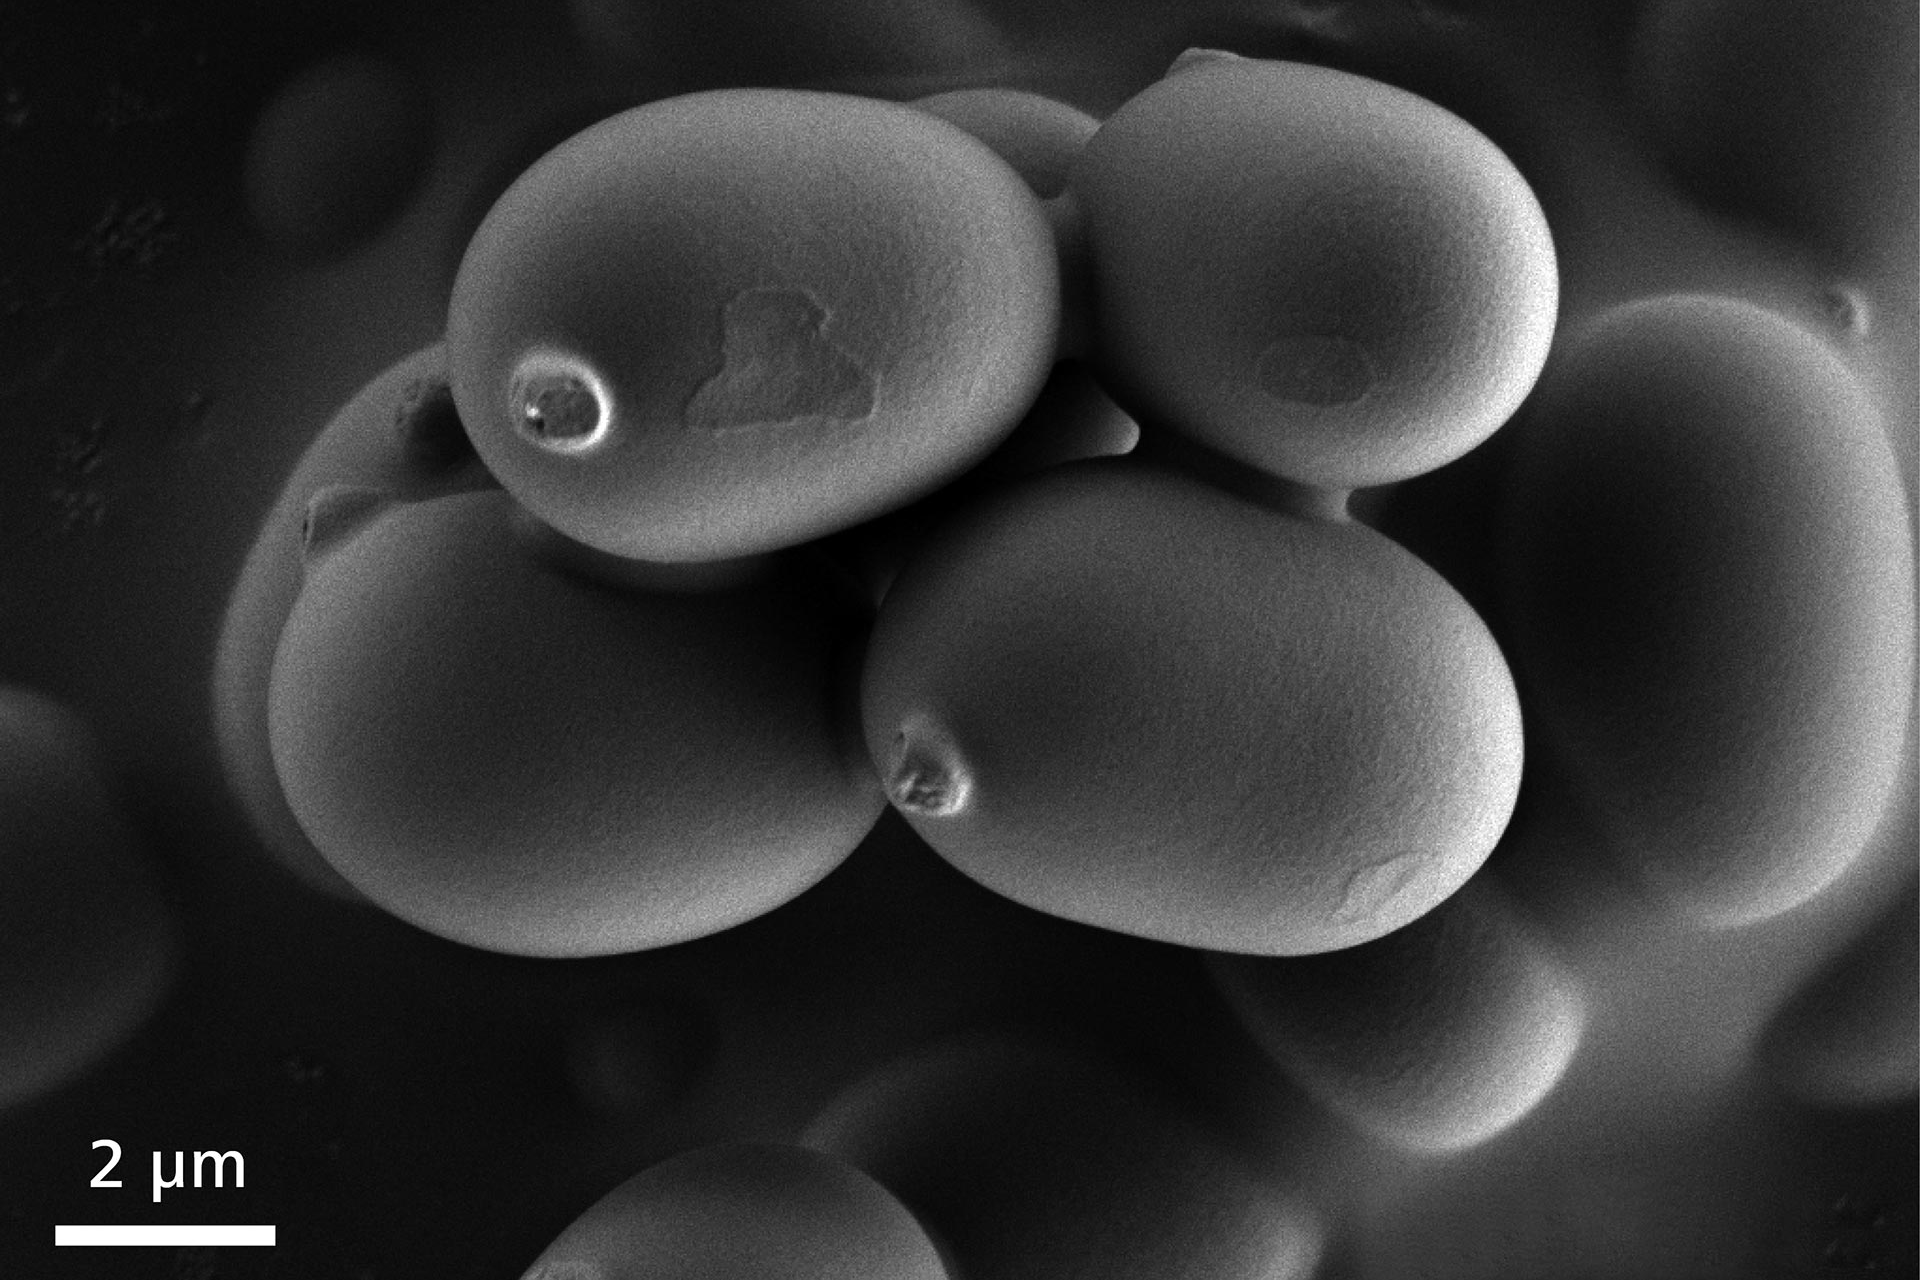 Image de spores de champignon capturée à 1 kV sous vide poussé. Sigma 500 capture aisément les images de ces structures fragiles et délicates à basse tension.